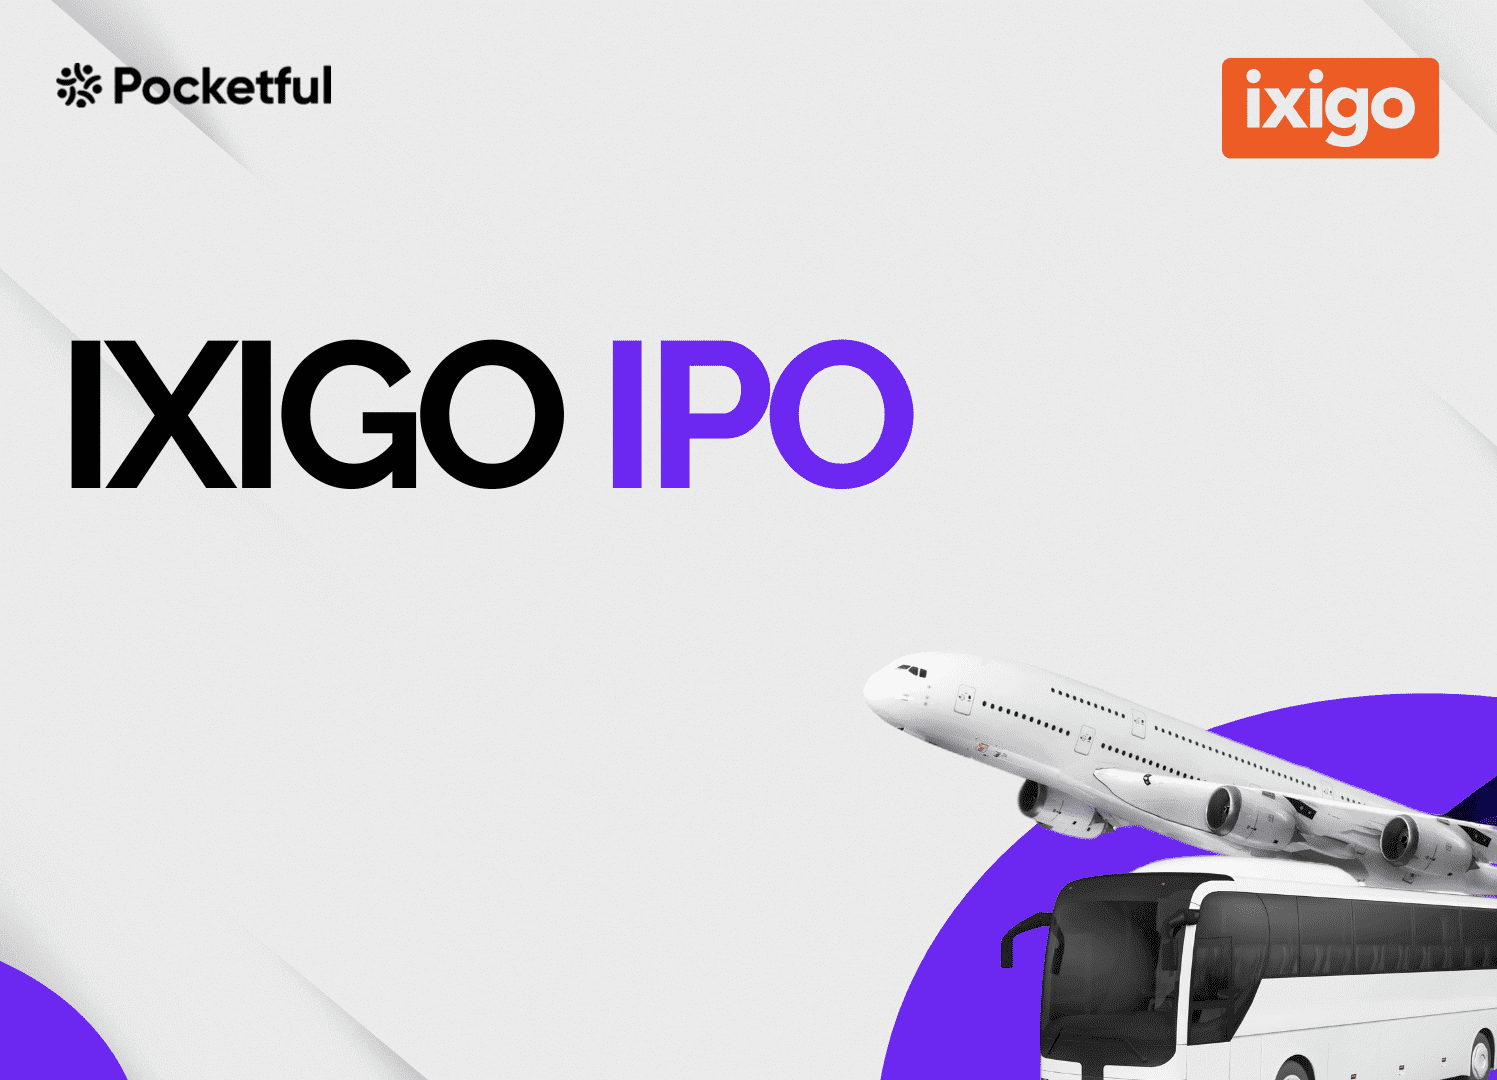 IXIGO IPO Case Study: Business Model, Key Details, and Financials